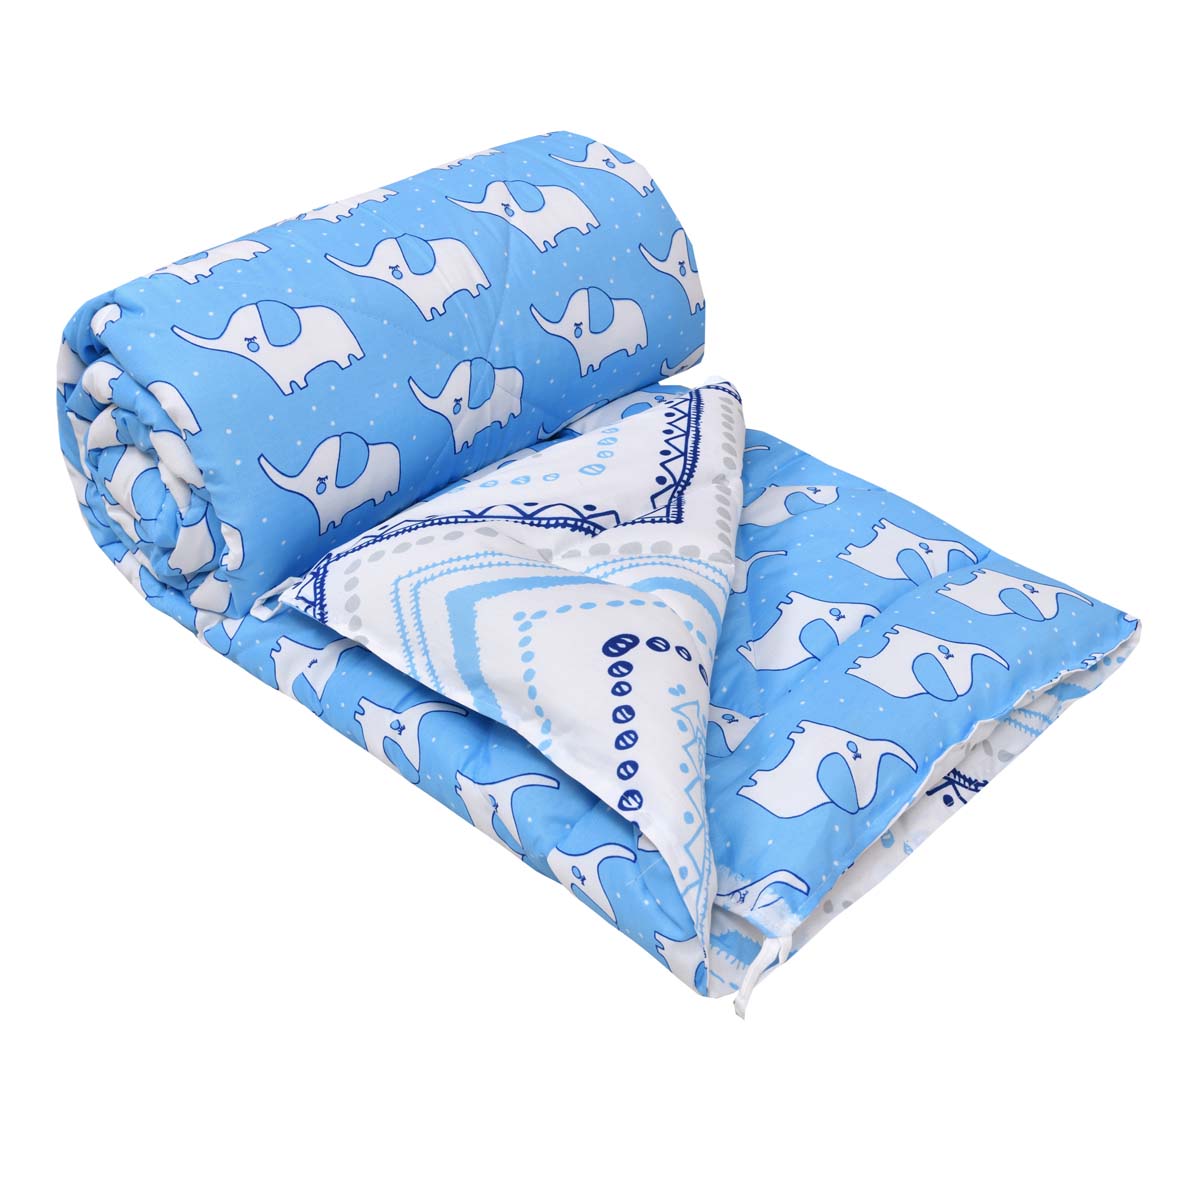 Minitrunks Blue Single Bed Kids Comforter